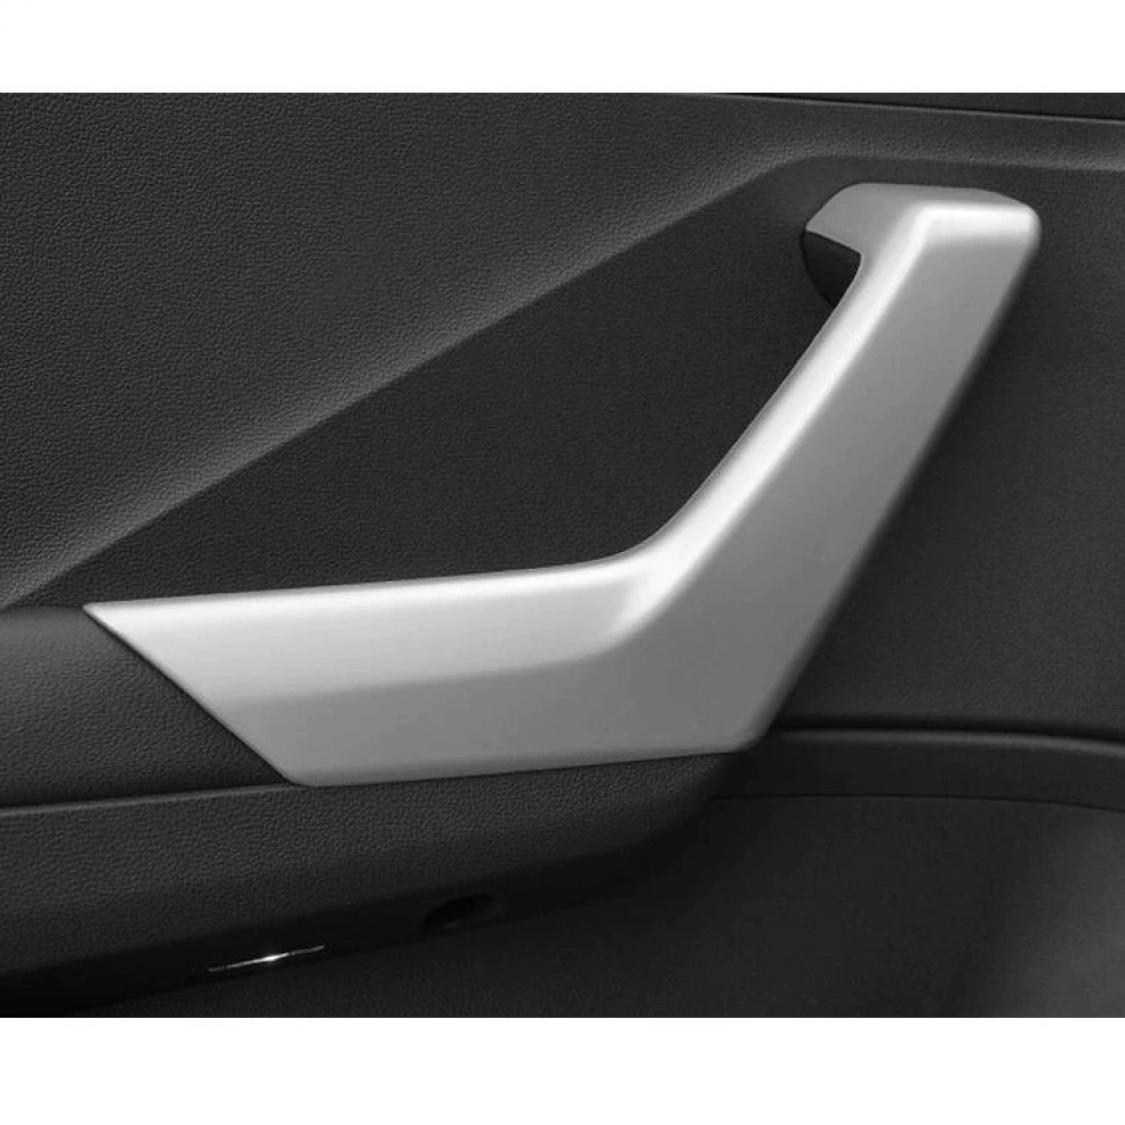 Handgriffe Blende Abdekung Rahmen Silber Matt Geeignet Für Audi Q5 SQ5 FY  online kaufen bei FFZ Parts oder Carstyler Der Kofferraumschutz für Dein  Auto